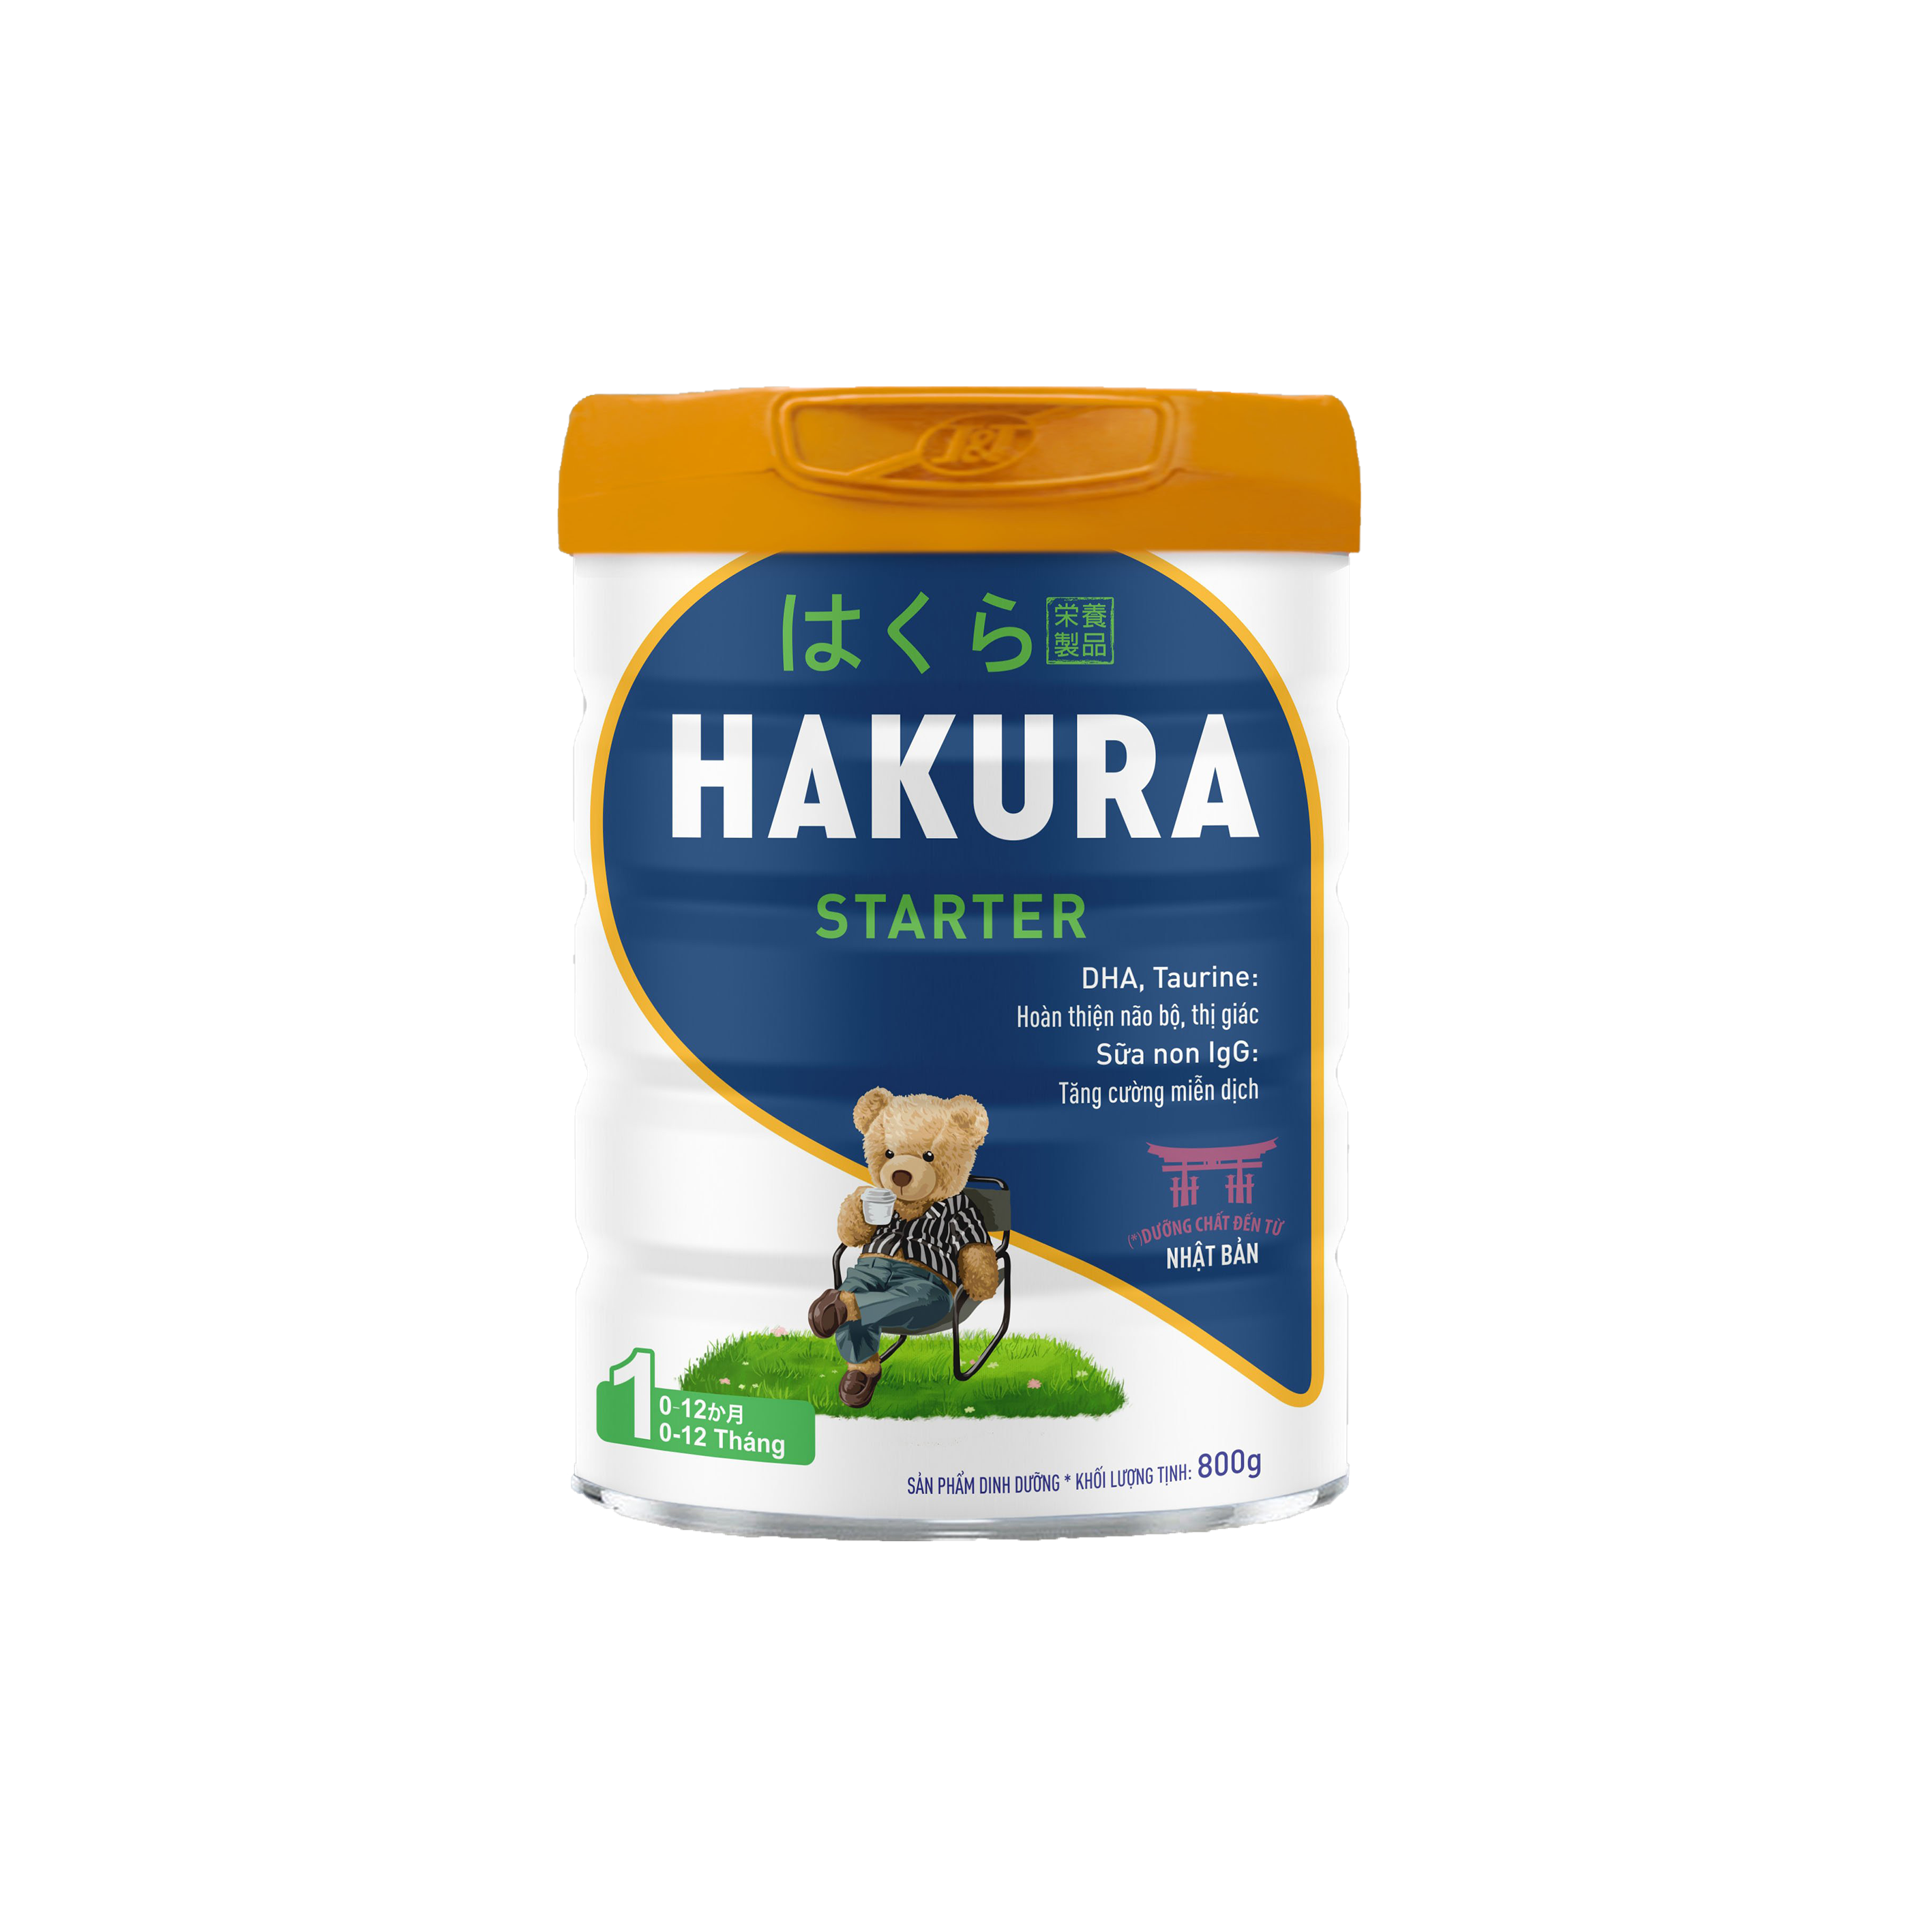 Hakura Starter